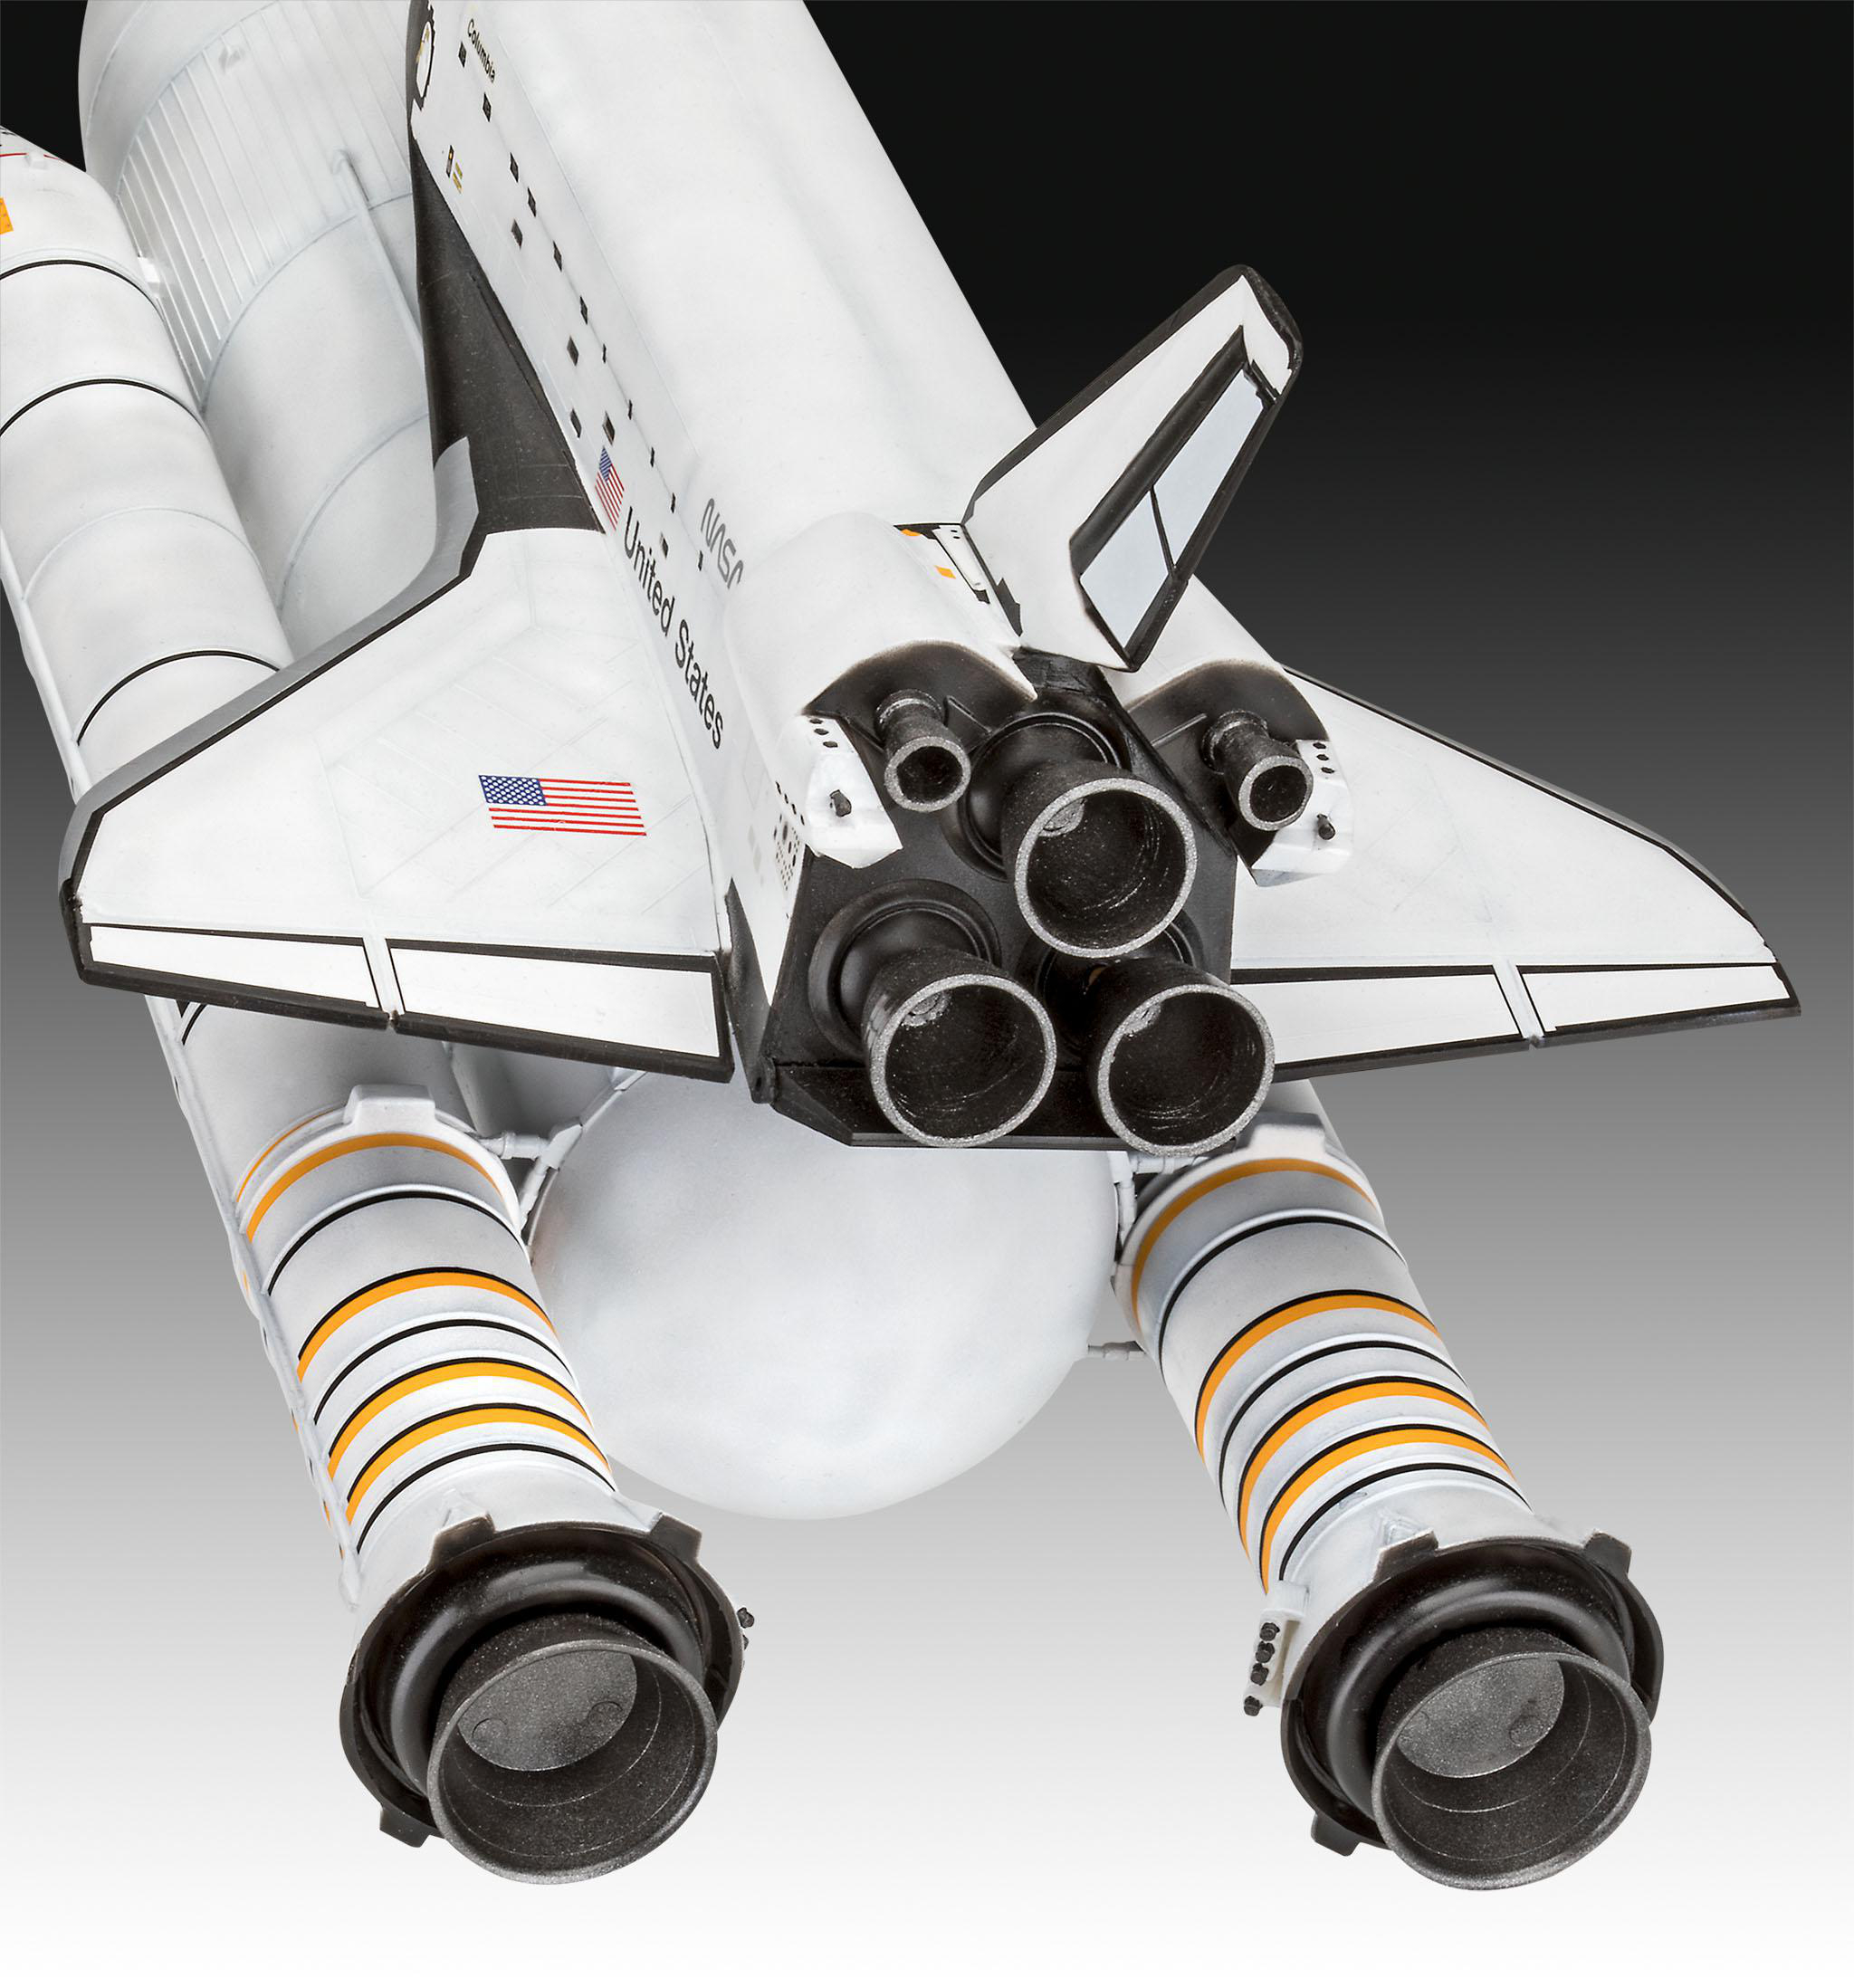 REVELL Geschenkset Space Shuttle& Booster Rockets, Modellbausatz, Mehrfarbig 40th